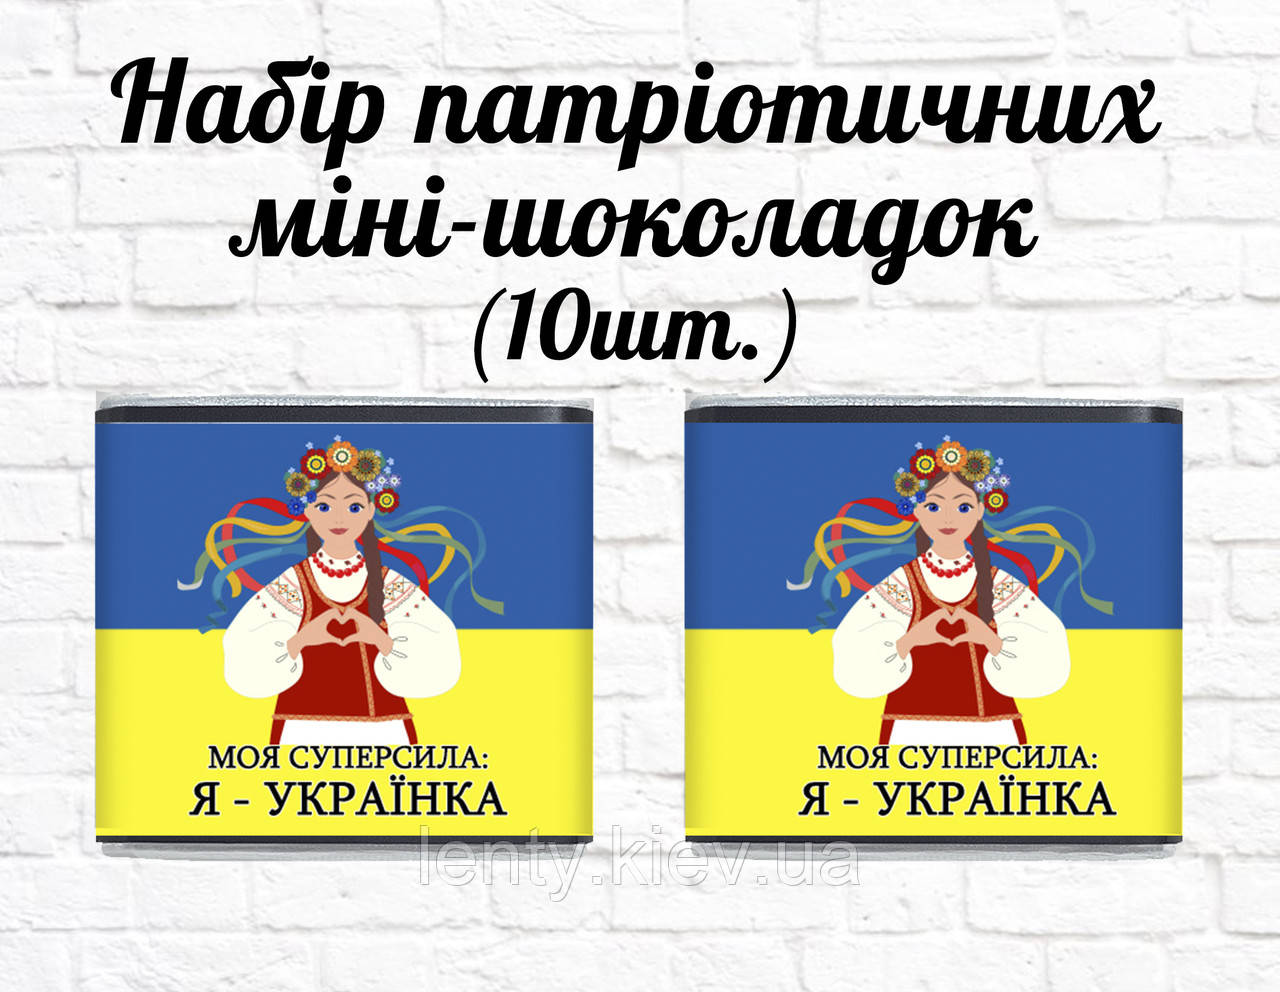 Набір патріотичних міні шоколадок "Моя суперсила: Я - Українка" 10шт.